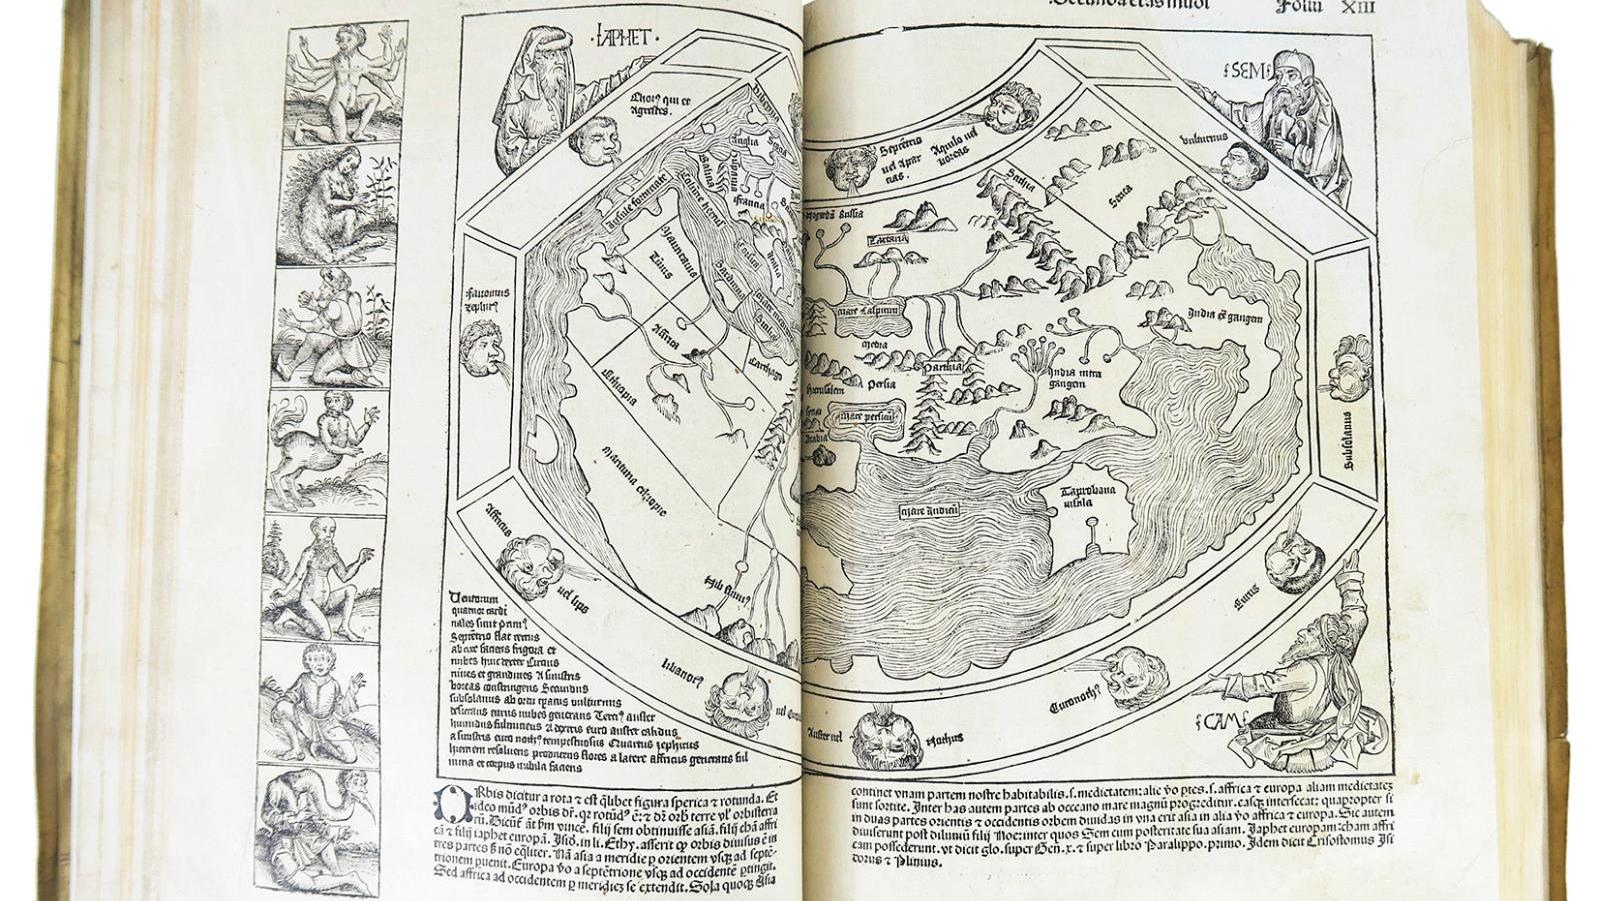 Hartmann Schedel (1440-1514), Nuremberg Chronicle (Nuremberg, 1493), folio edition... The World according to Hartmann Schedel 